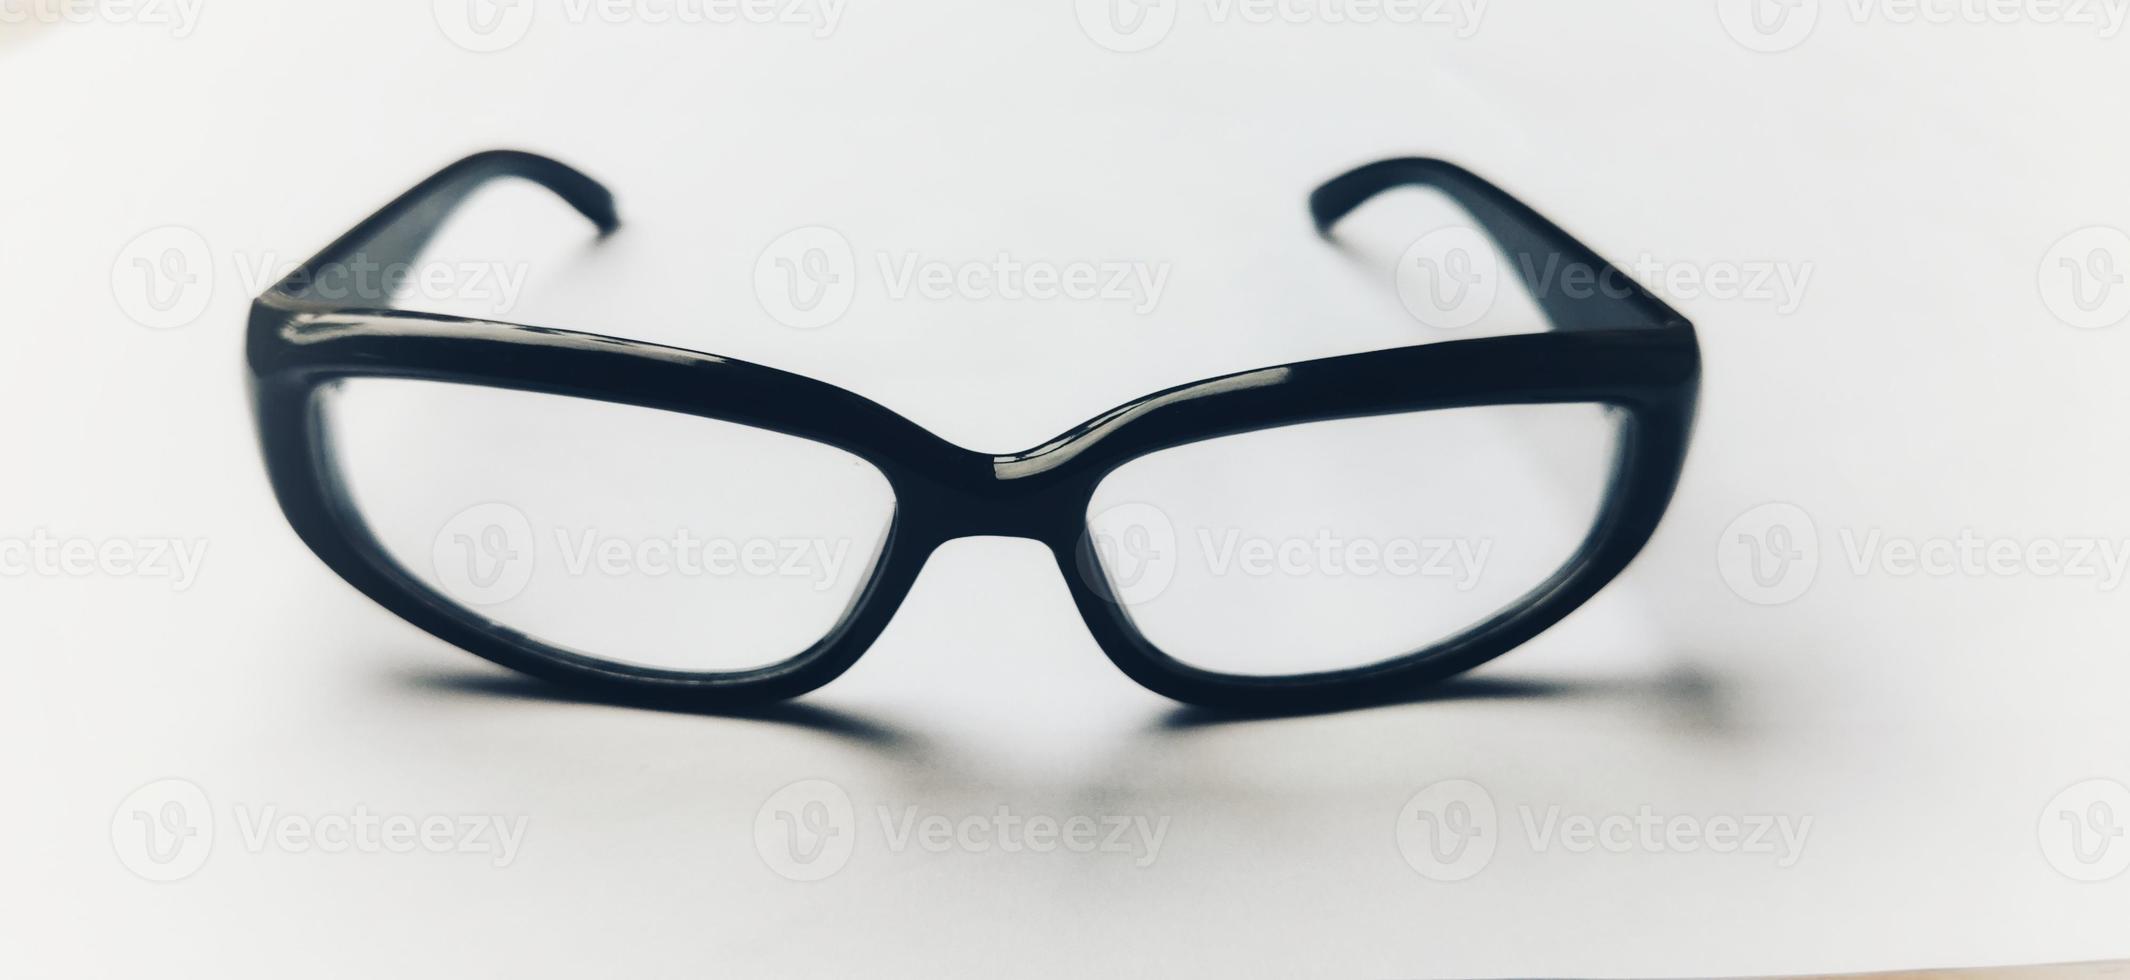 óculos de sol isolados no fundo branco foto